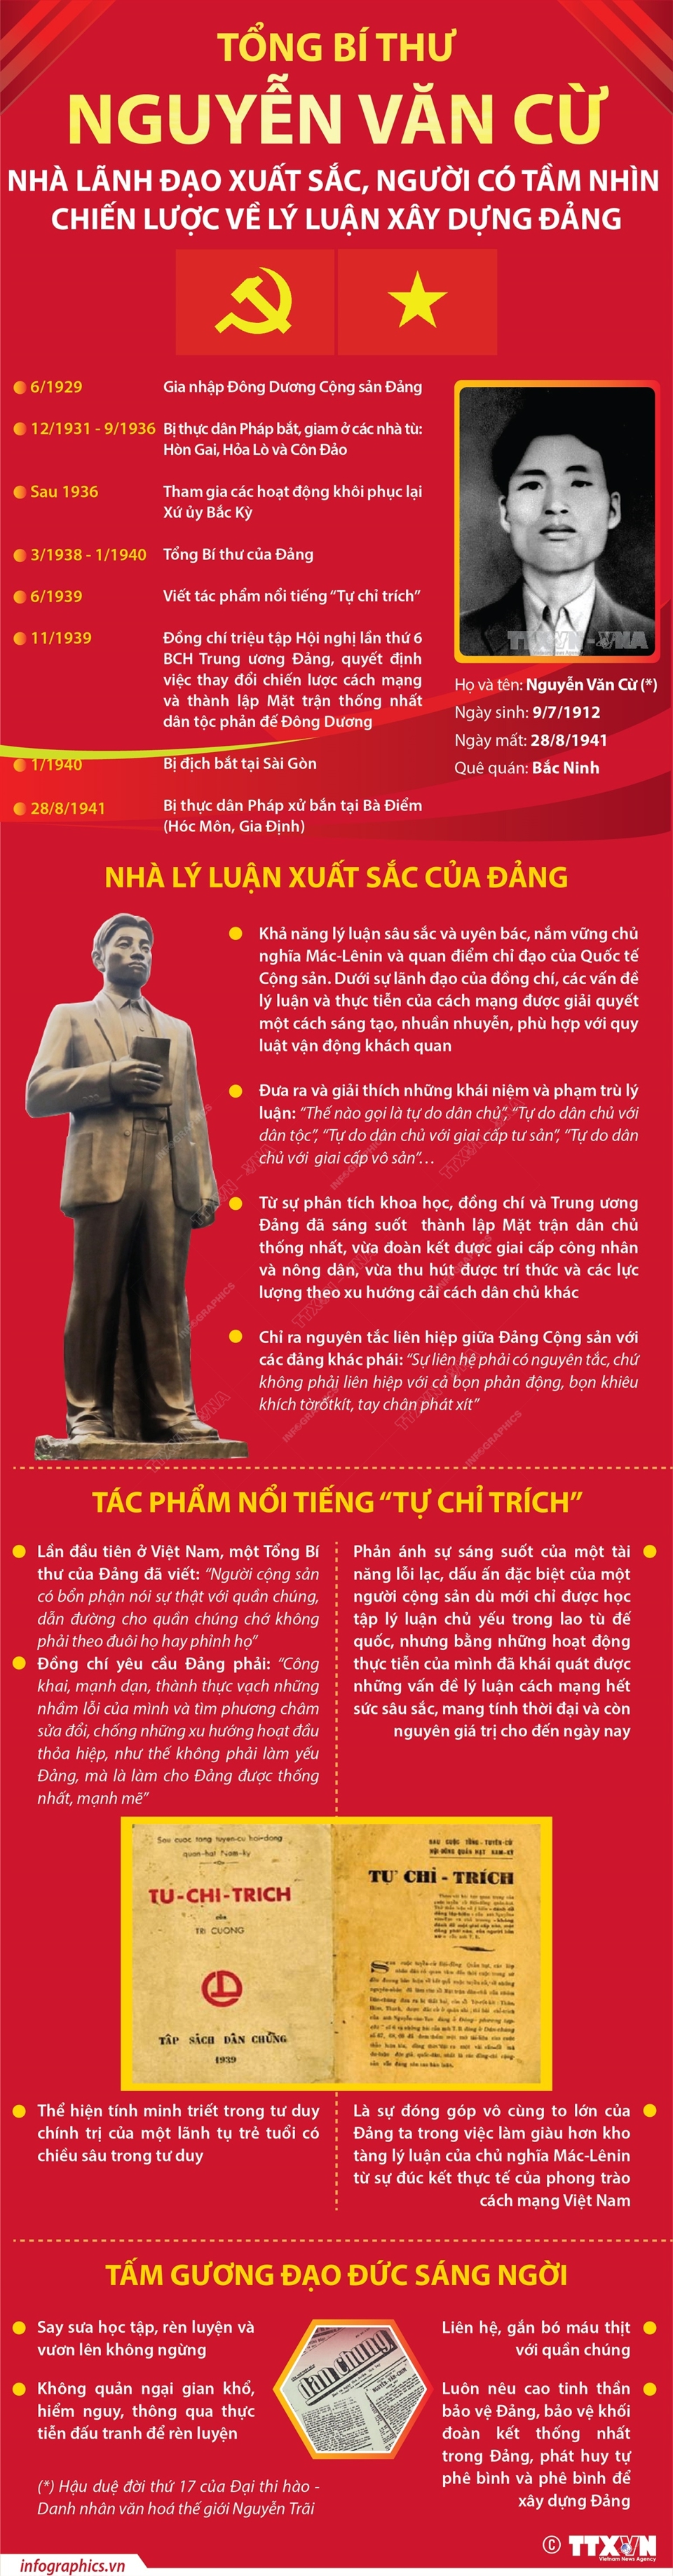 Tổng Bí thư Nguyễn Văn Cừ - Nhà lãnh đạo xuất sắc - Ảnh 1